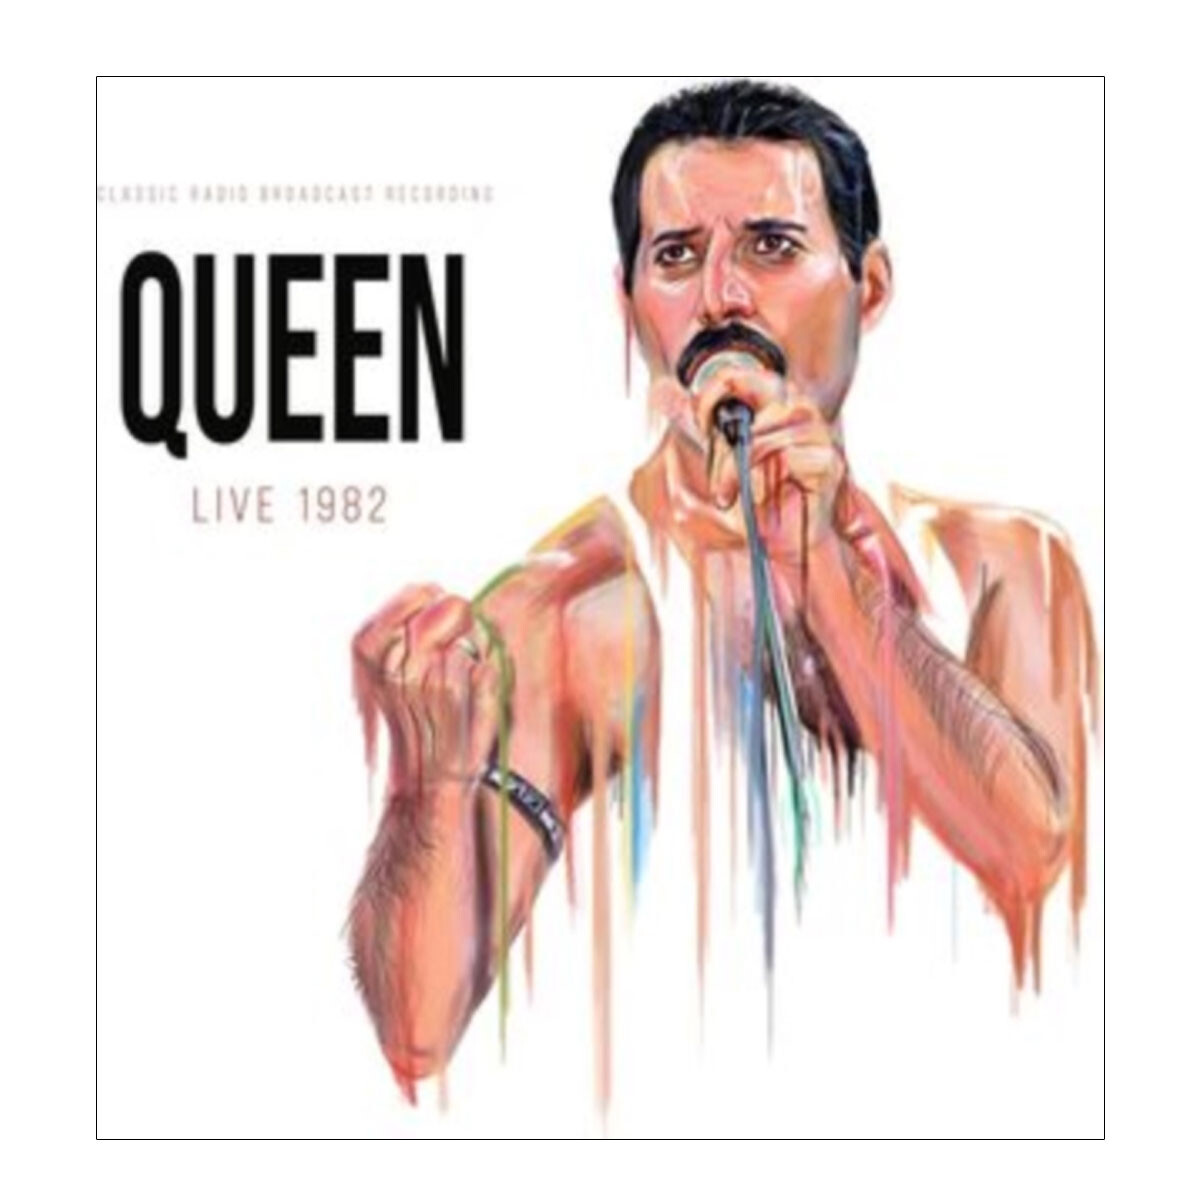 Queen - Live1982 (picture Disc) - Vinyl 